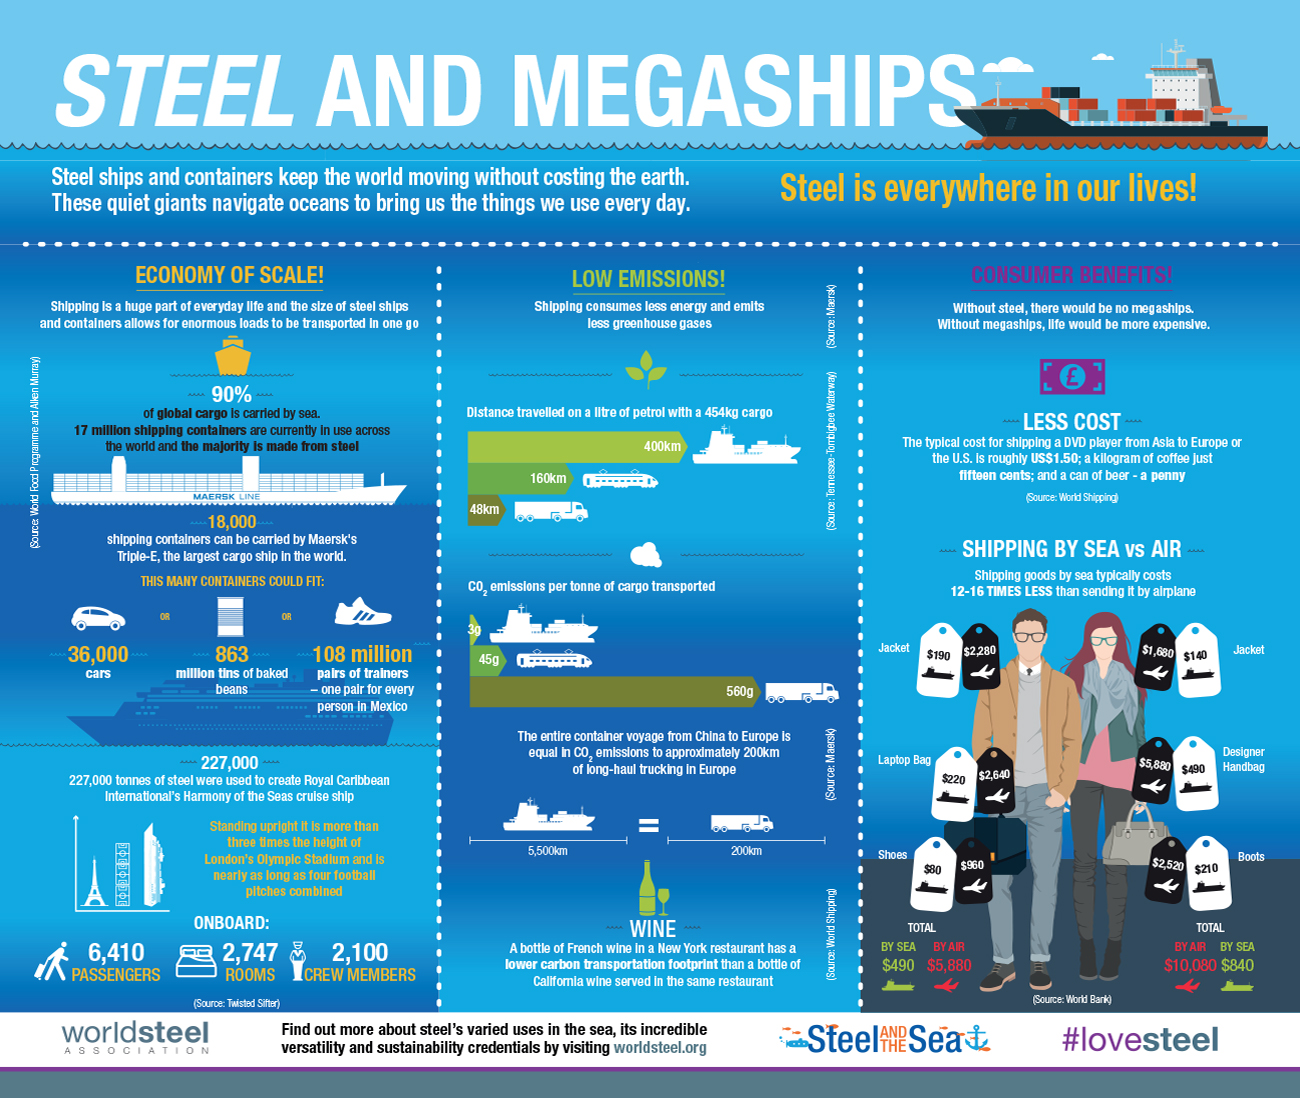 10 Ways Steel is Used at Sea